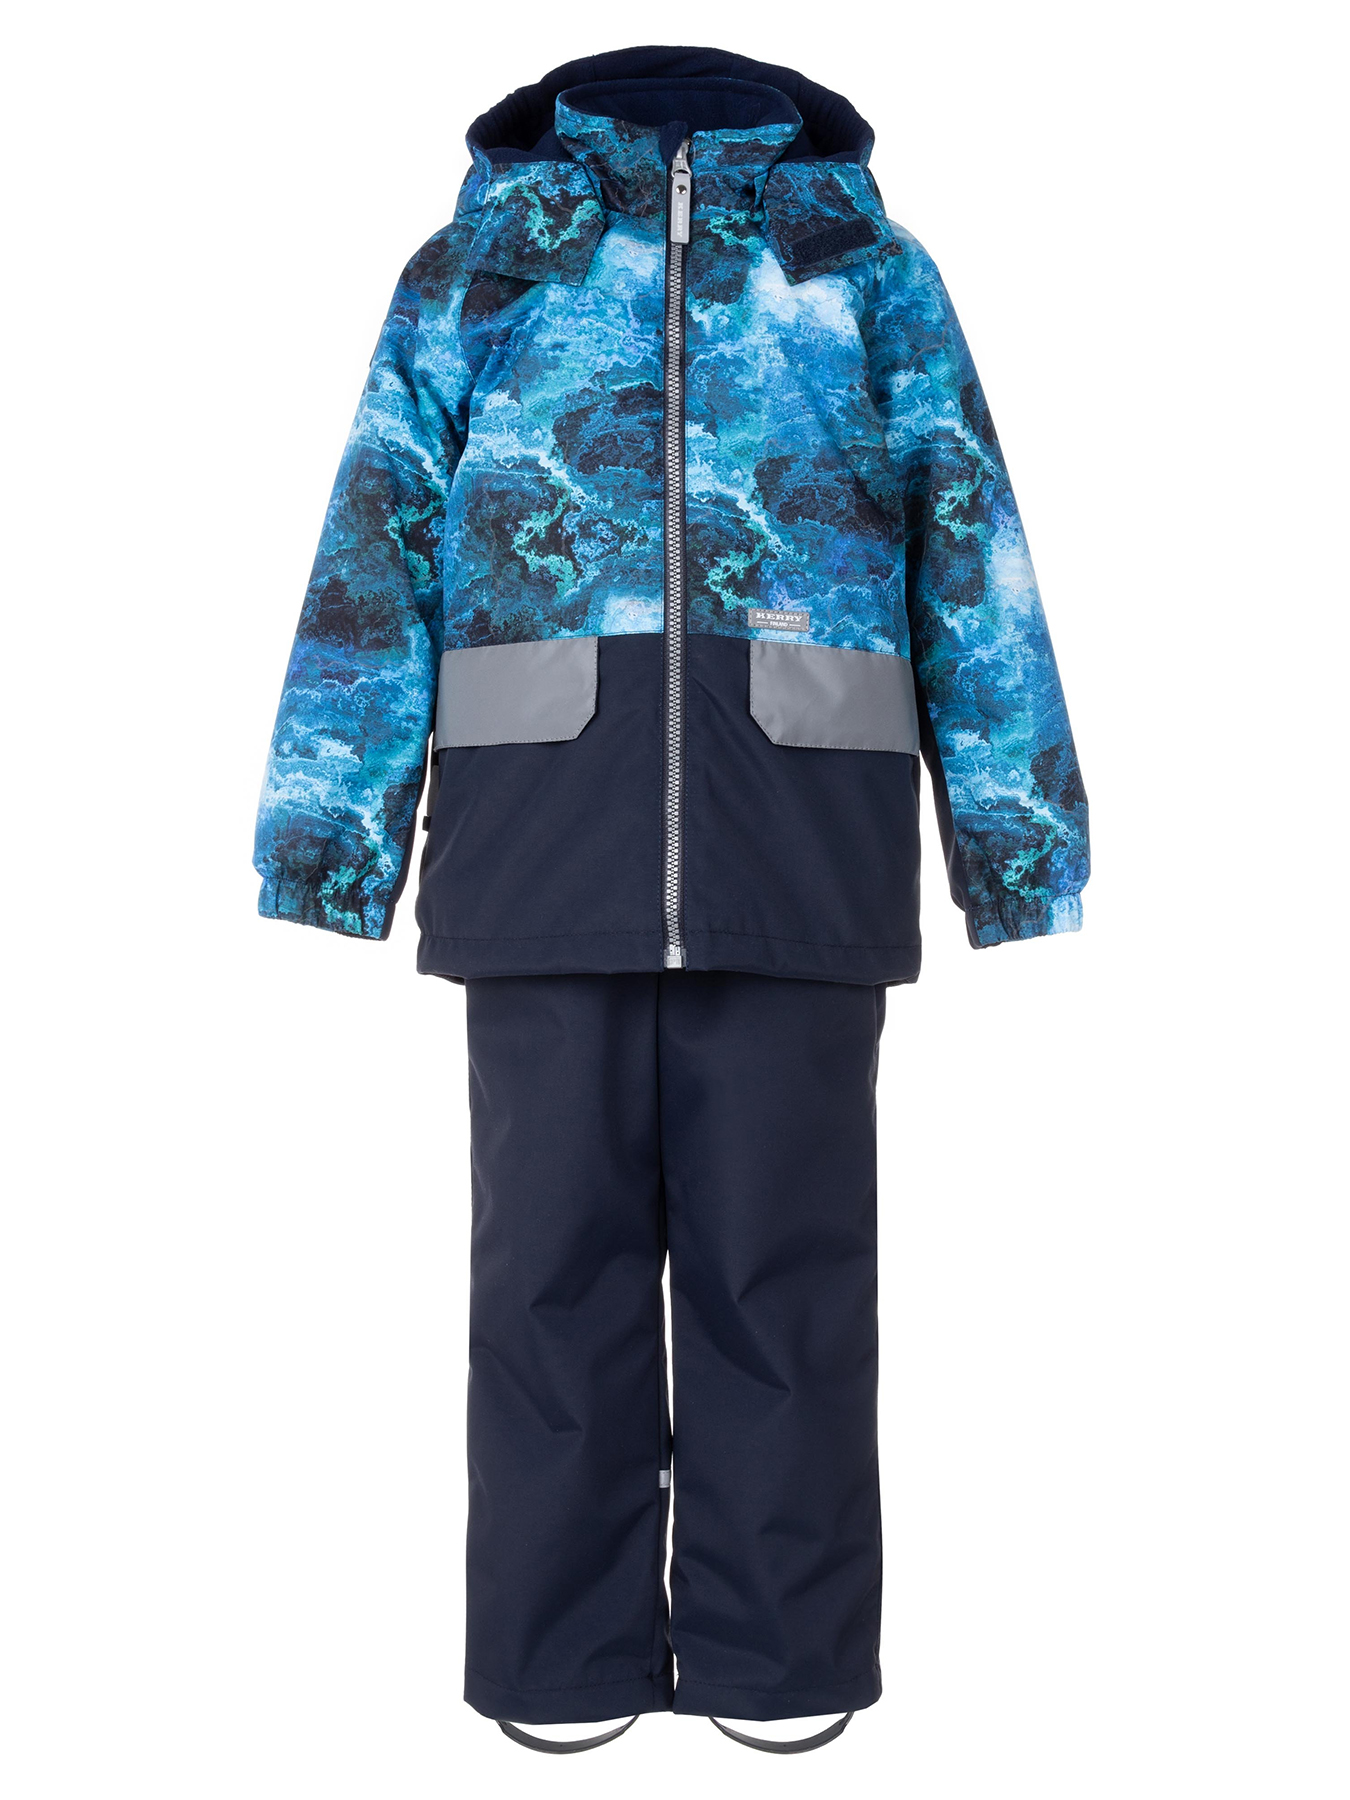 Комплект верхней одежды KERRY TOMI K24030, 6310-синий с рисунком/темно-синий, 128